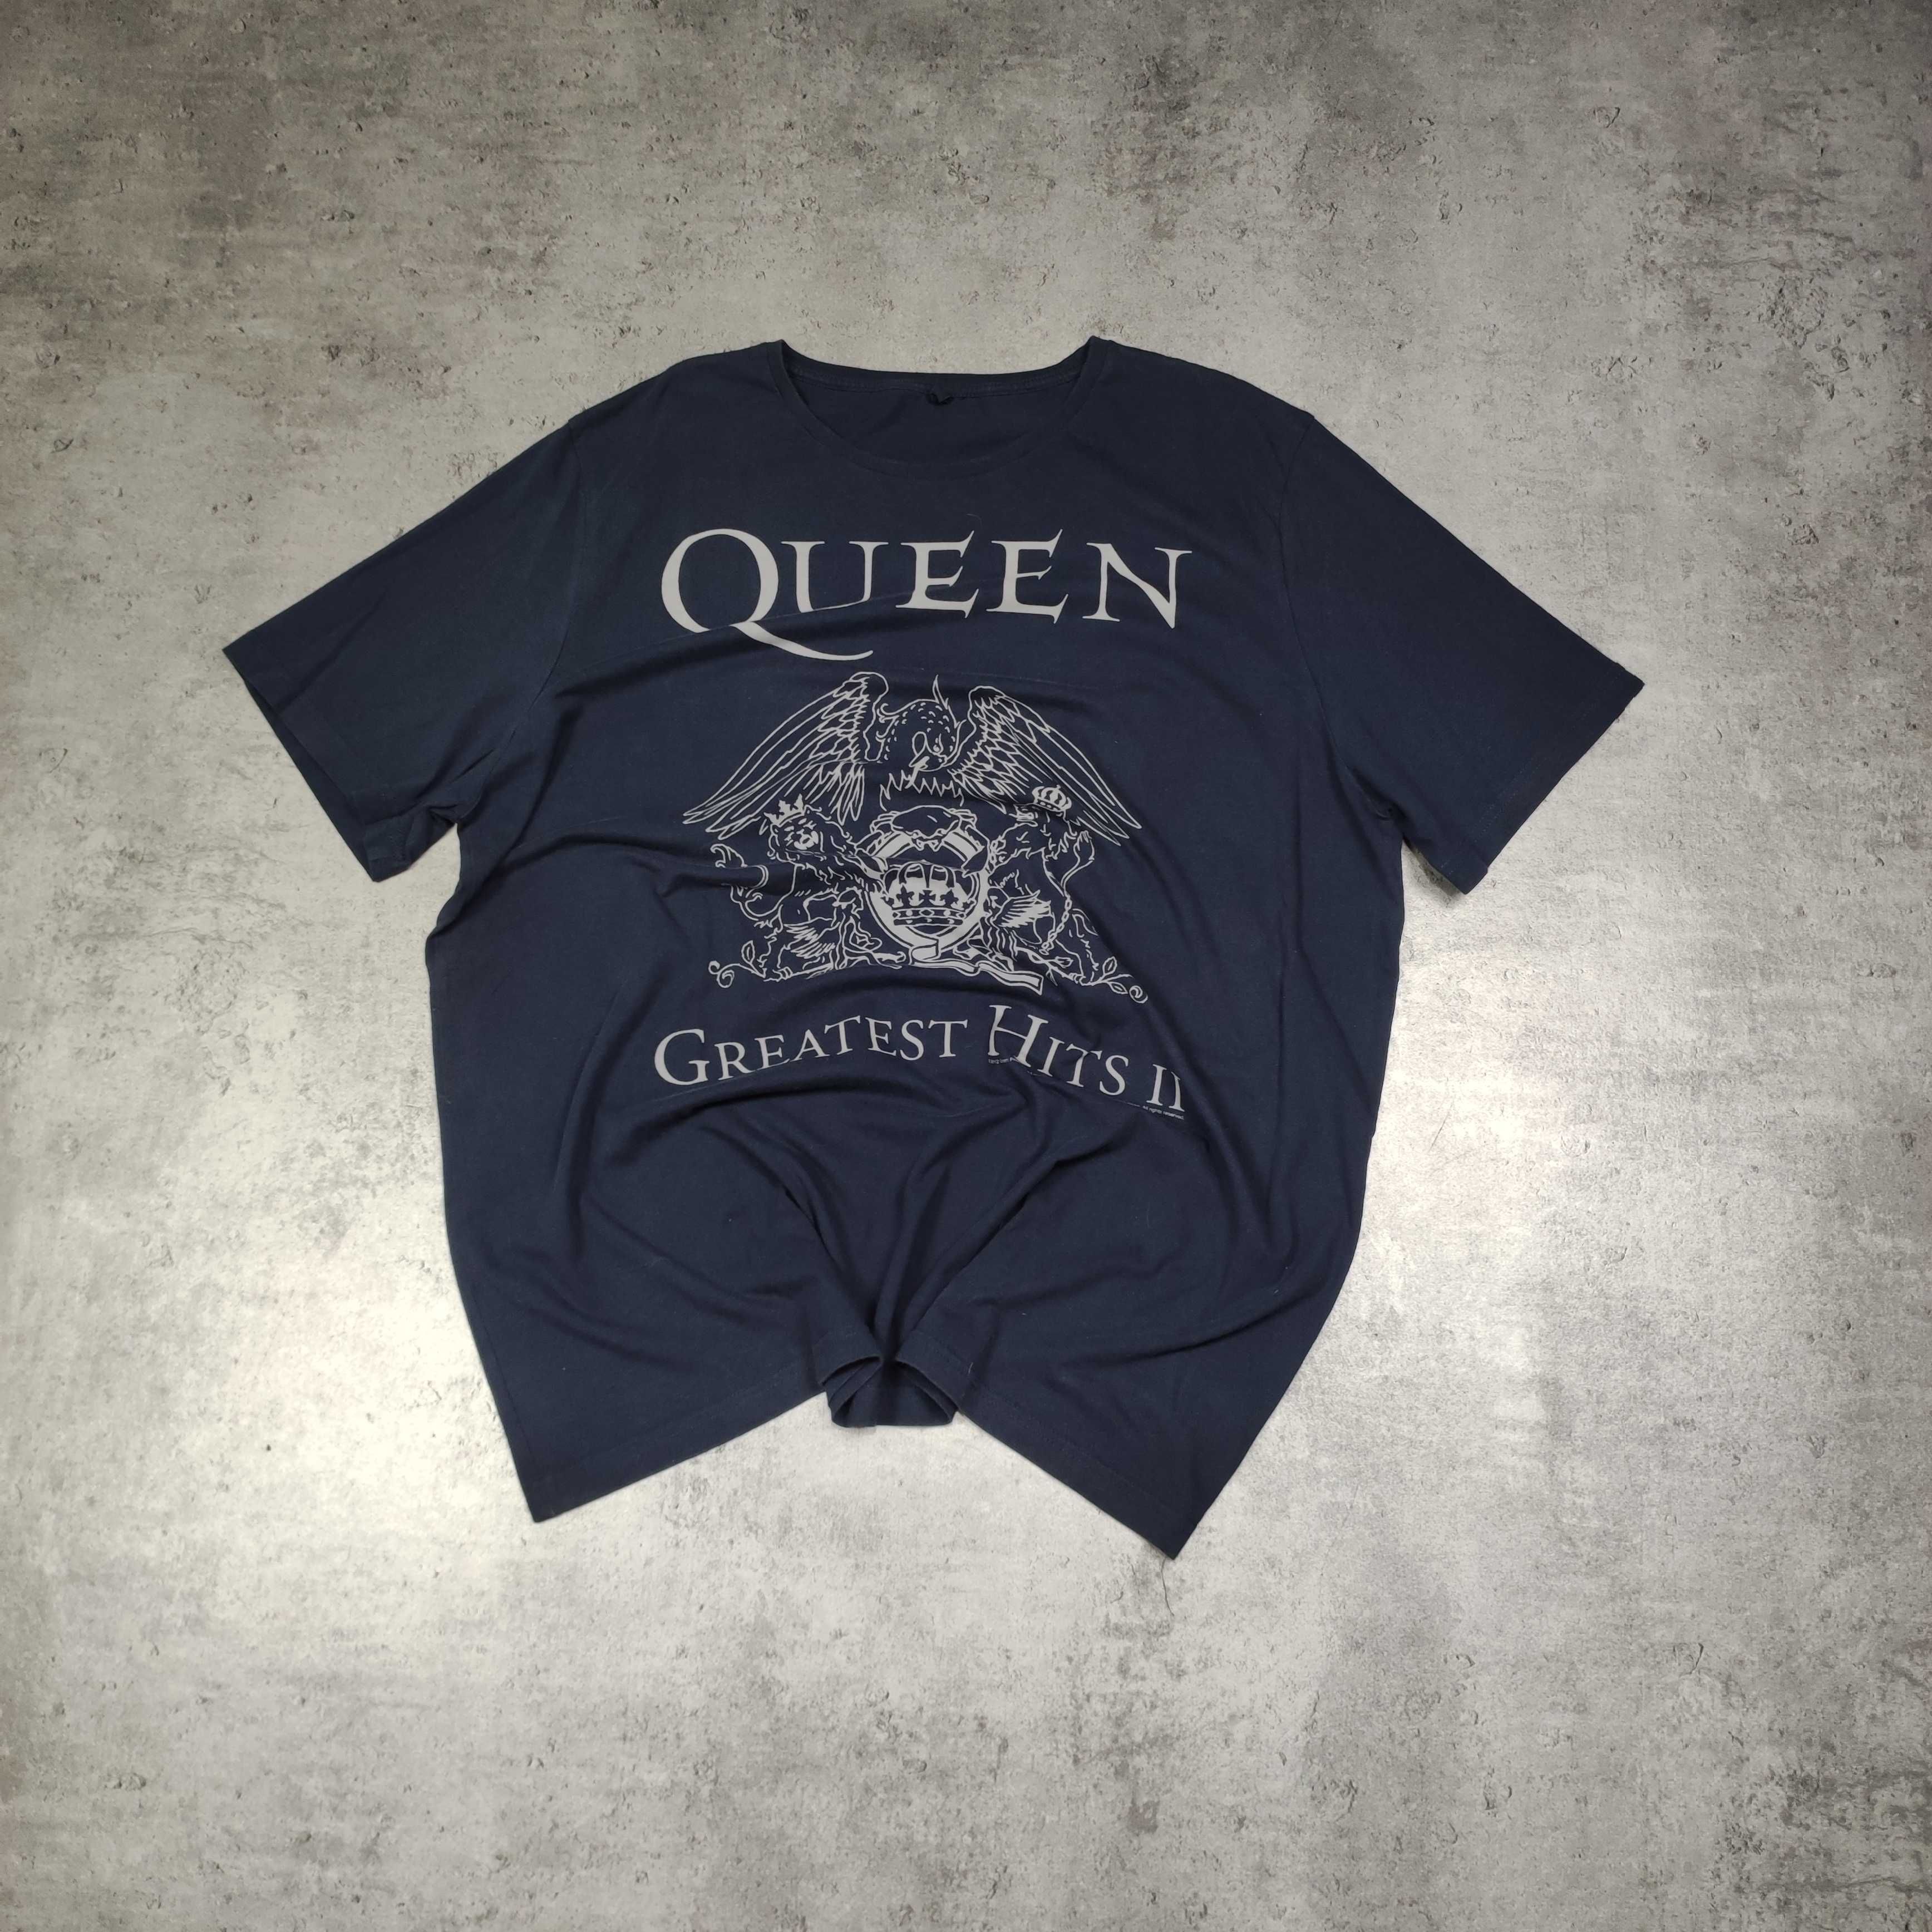 MESKA Koszulka Granatowa Queen Duże Logo Licencja Oficjalna Bawełna